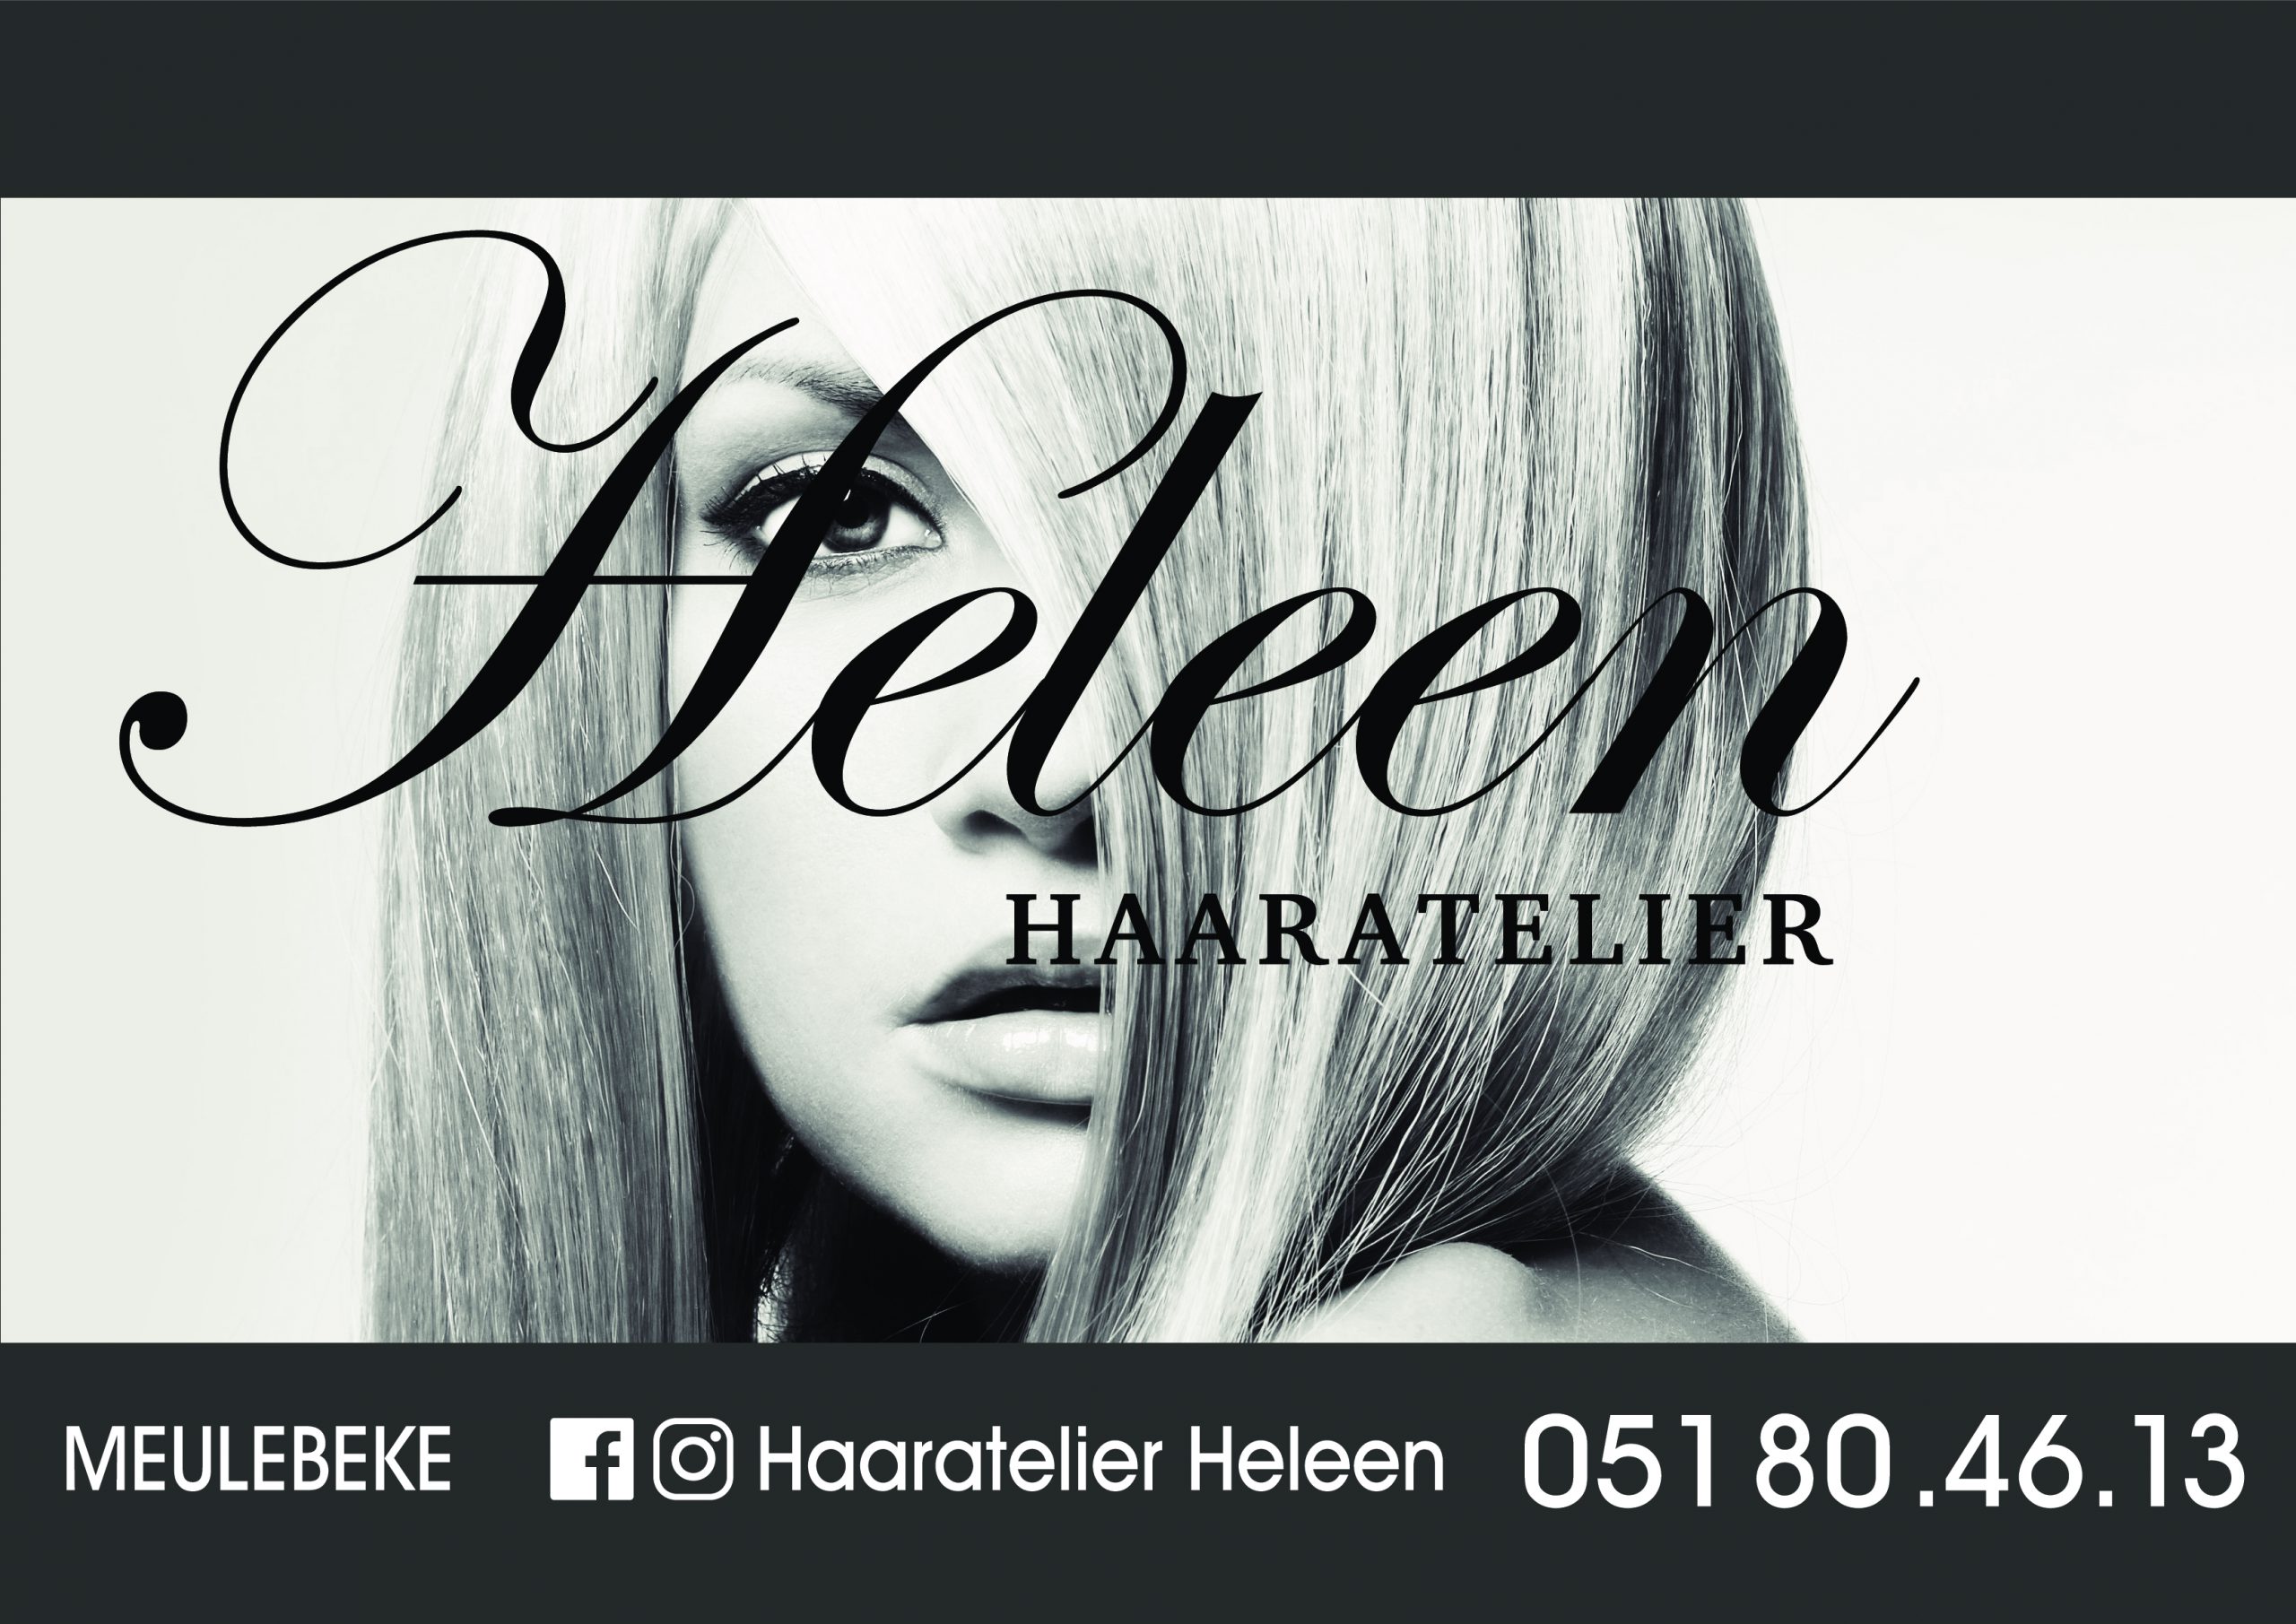 Heleen haaratelier sponsor